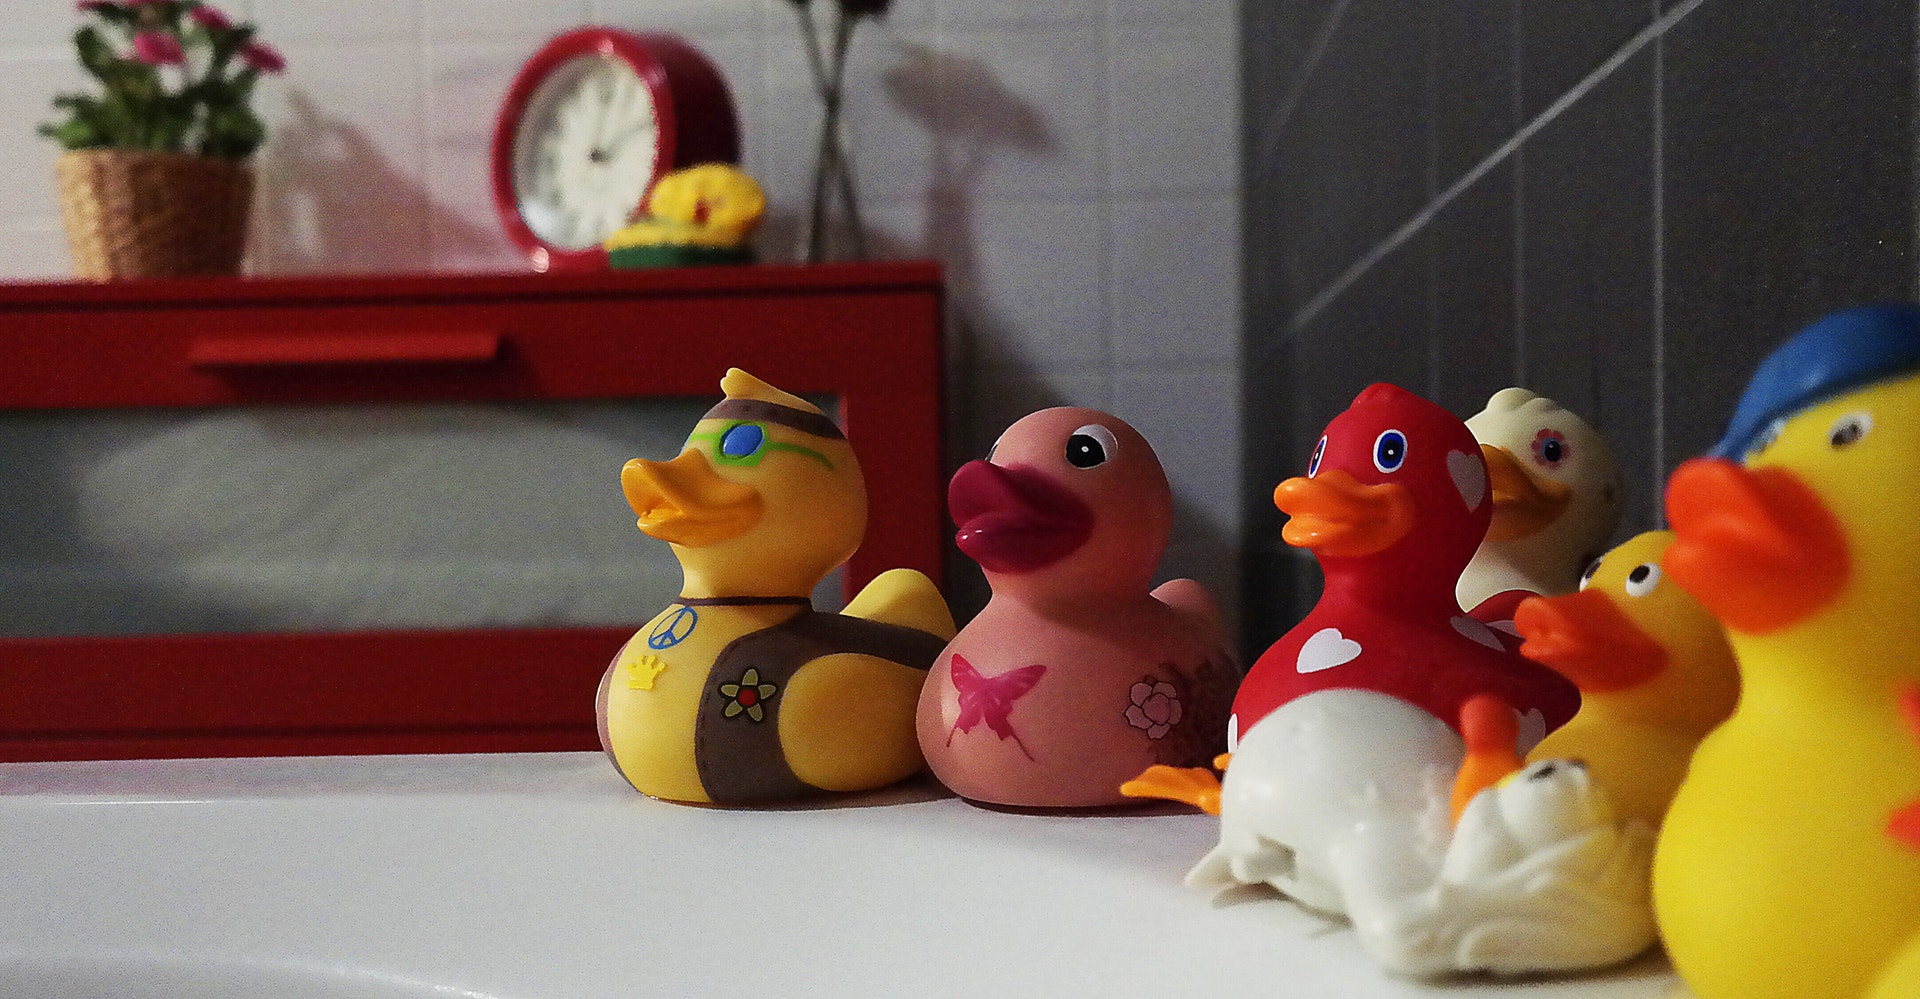 16 Rubber Duck Bathroom Decor Accessories You’ll Love